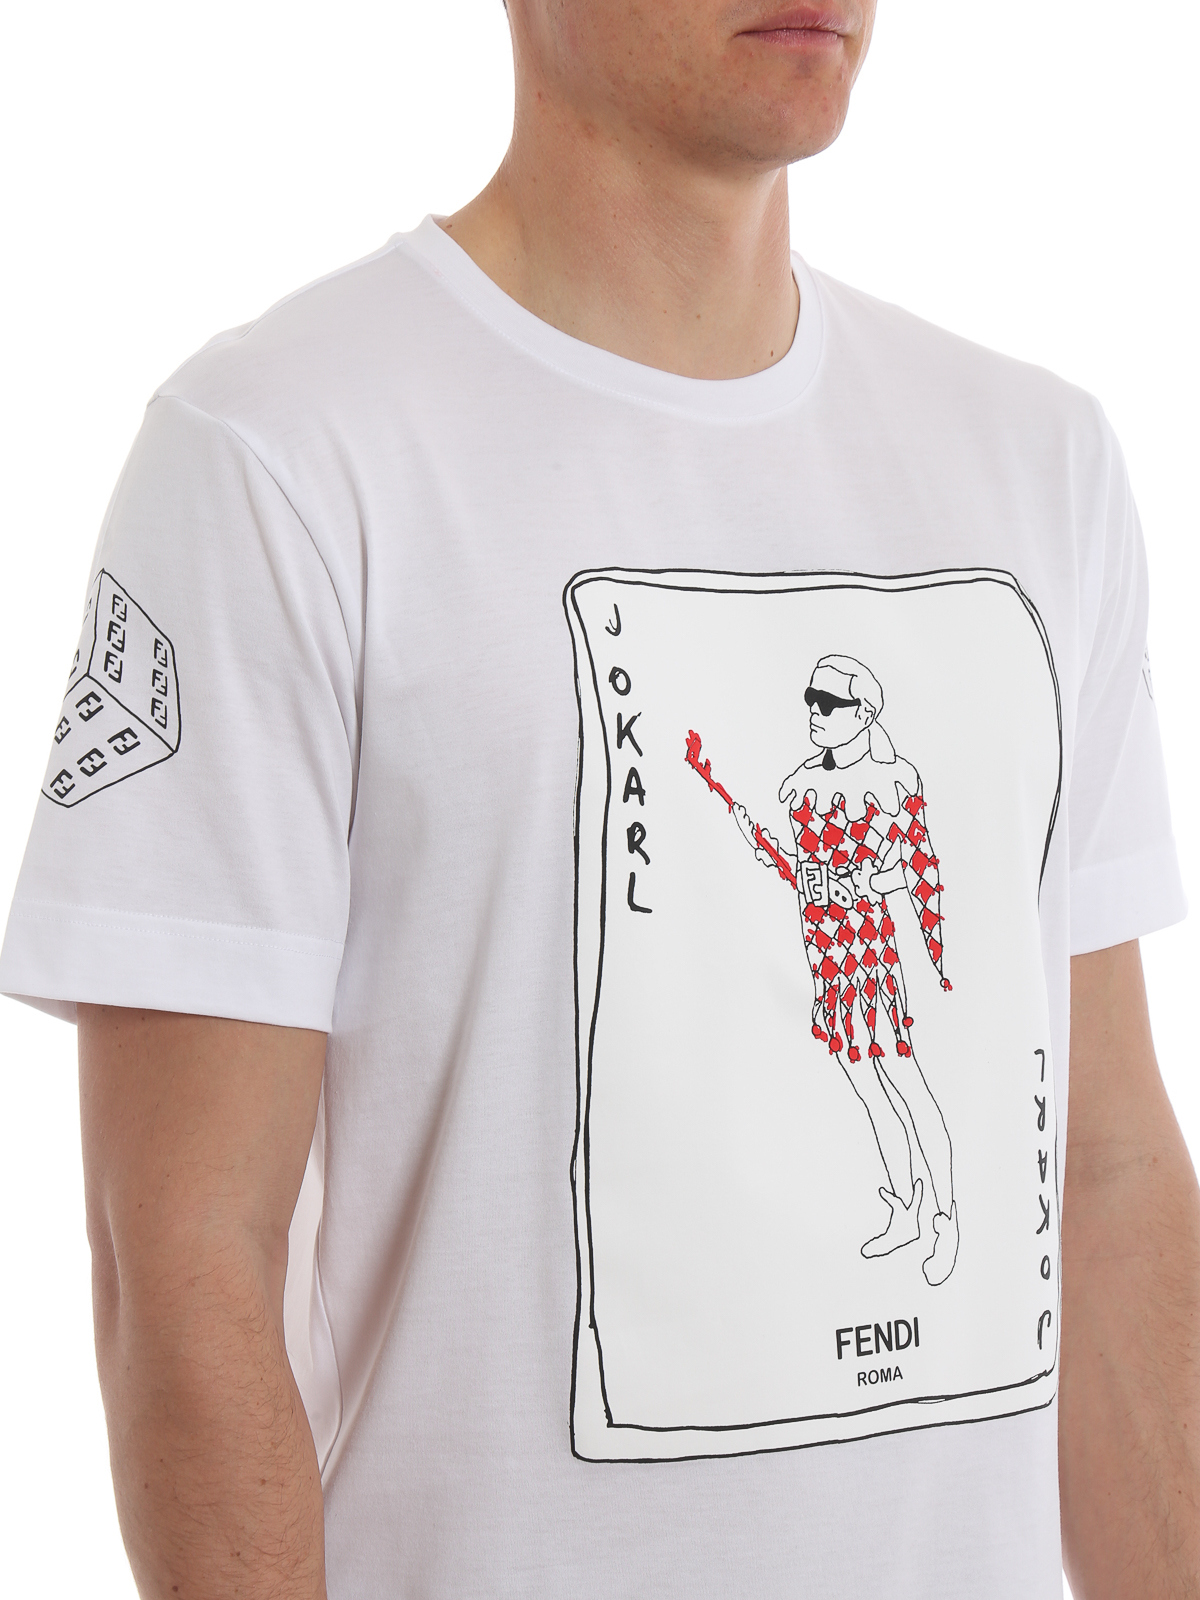 Fendi - Jokarl print white T-shirt - t 